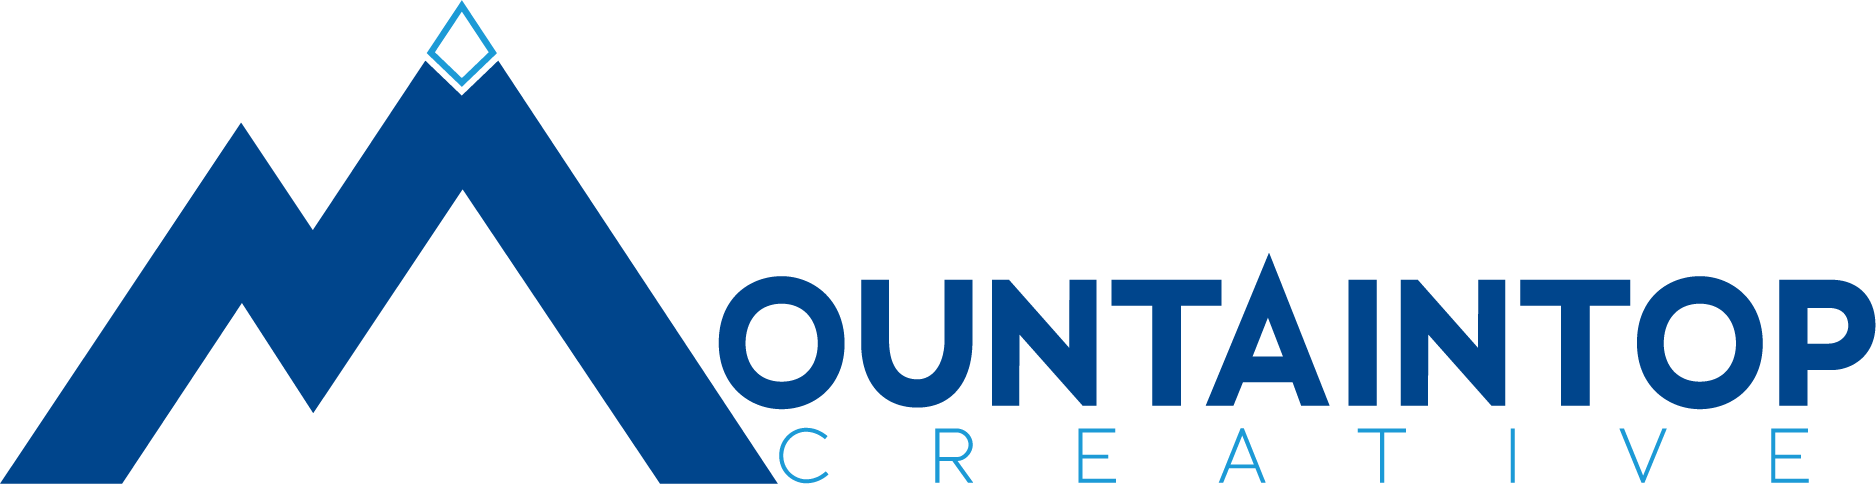 Mountaintop Creative Group